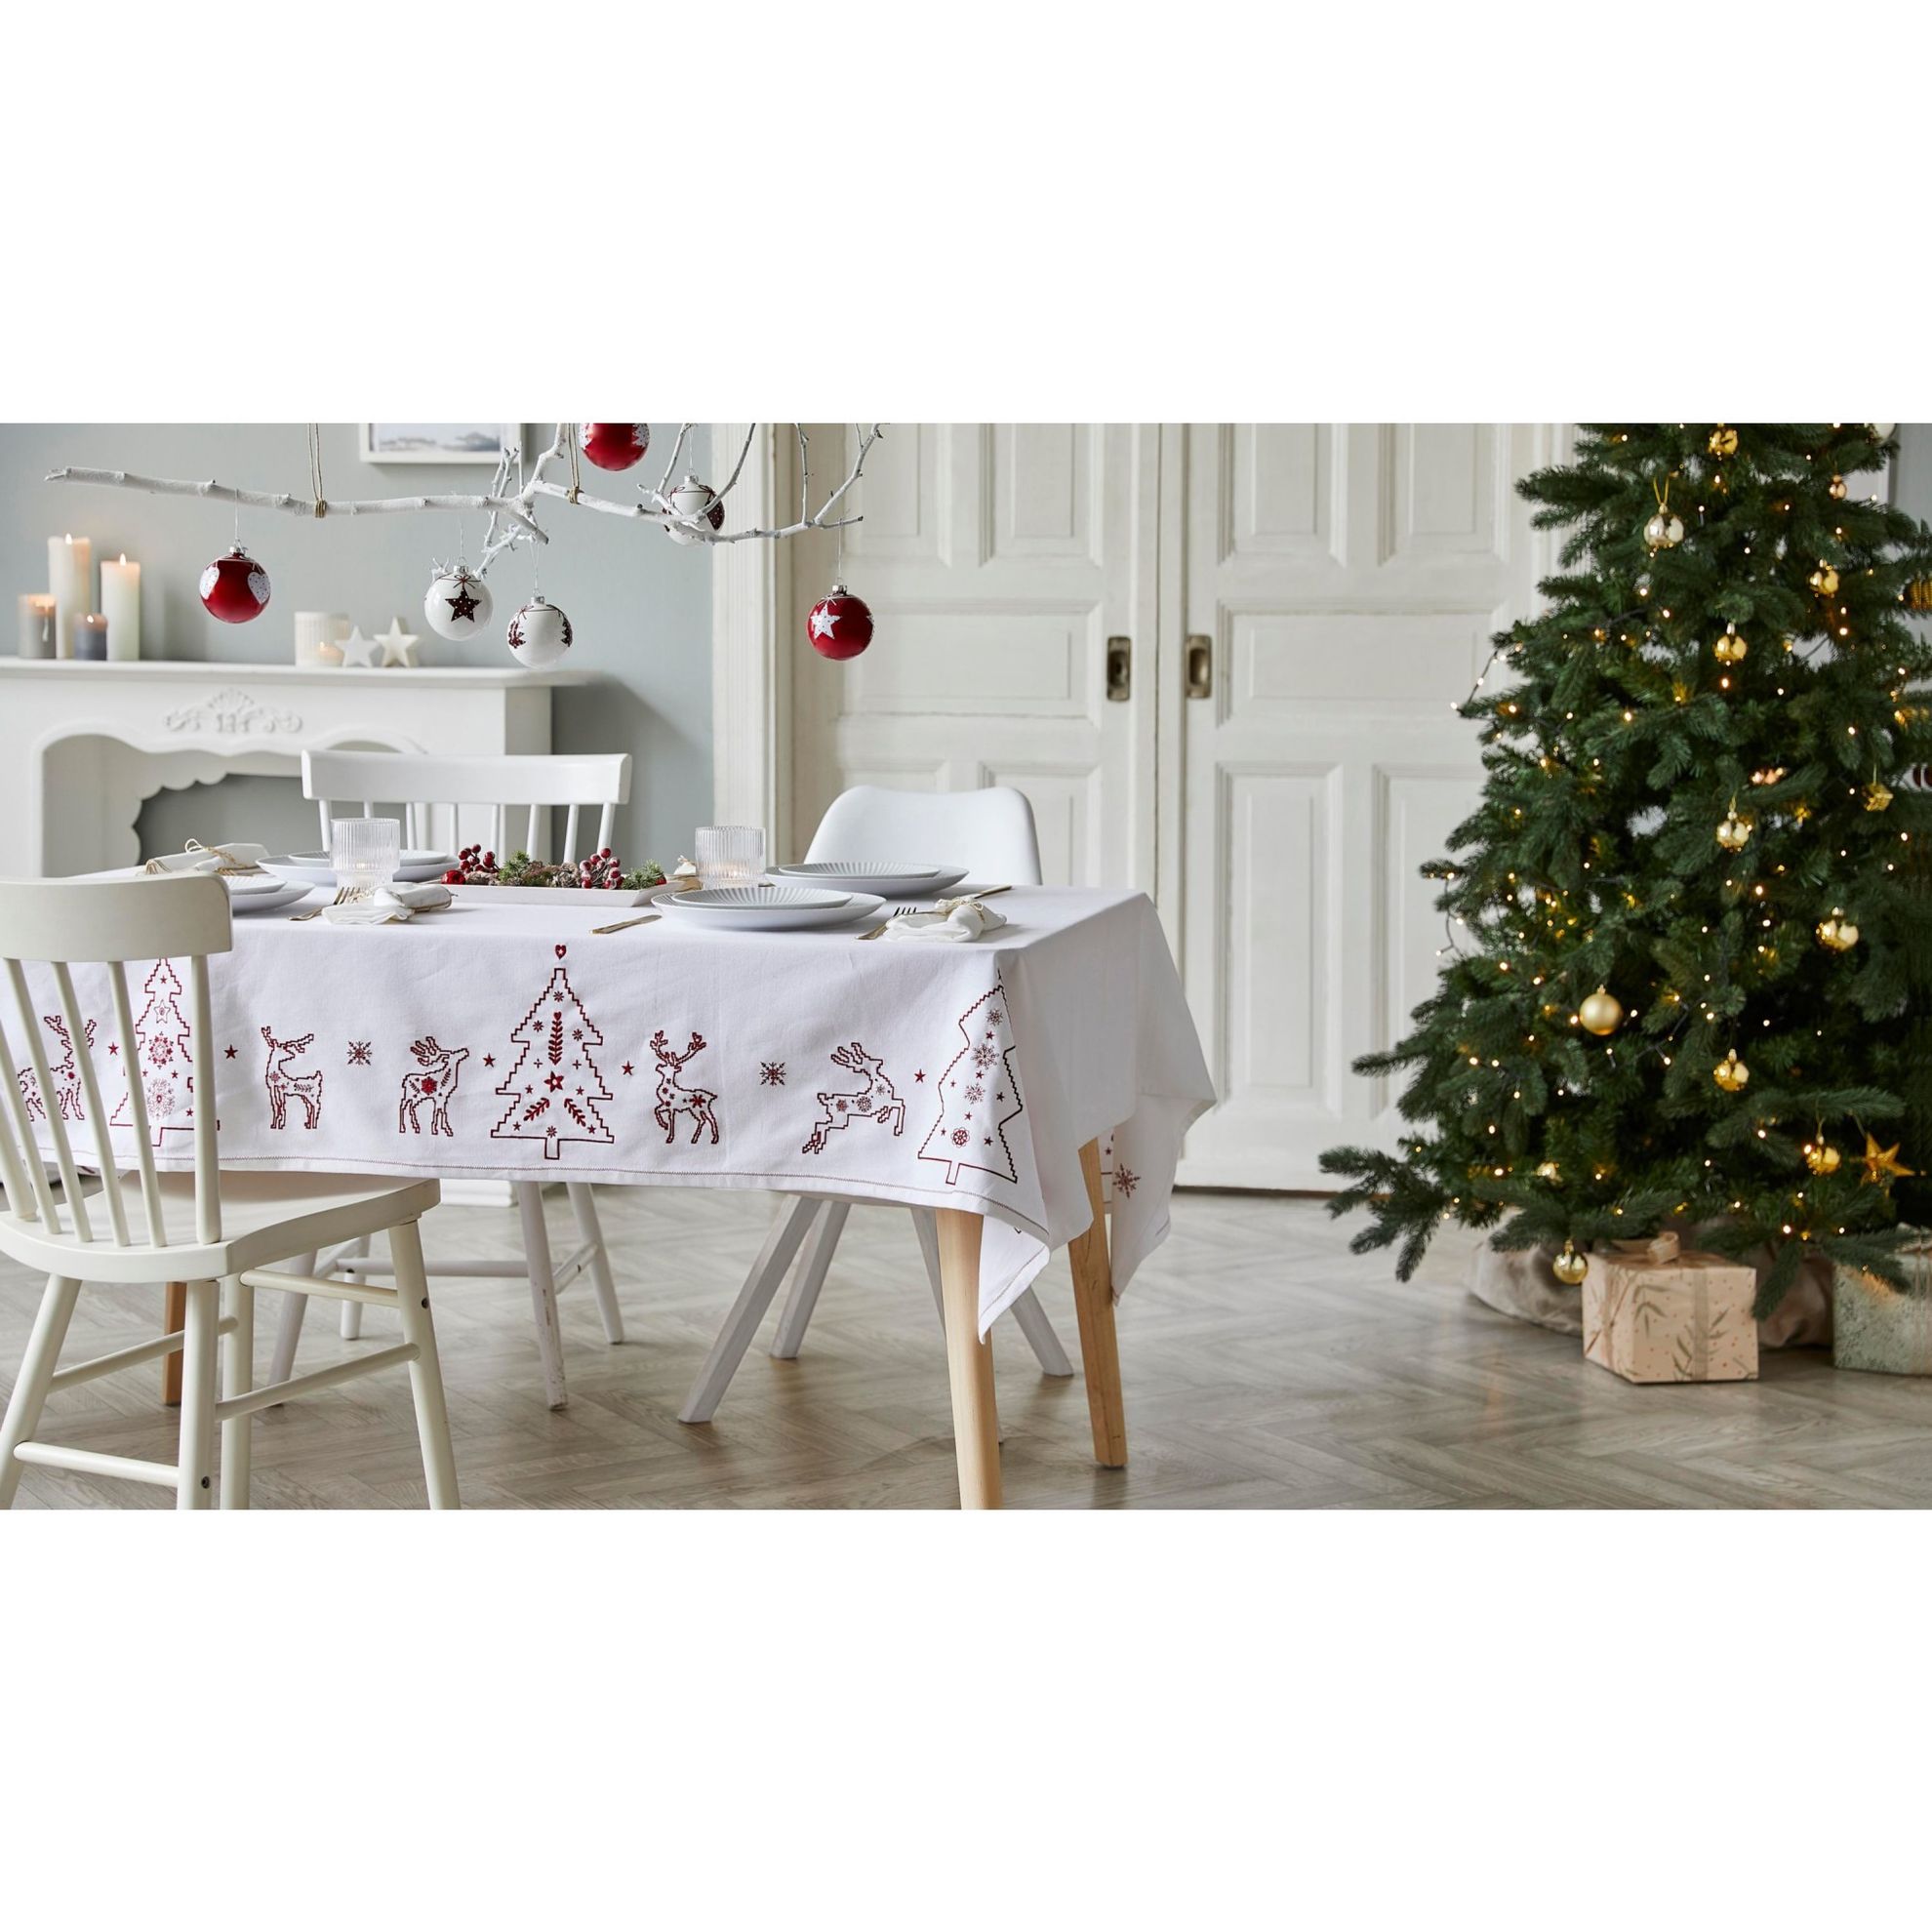 Tischdecke mit Stickerei Weihnachts-Elch Weiß Rot | Weltbild.de